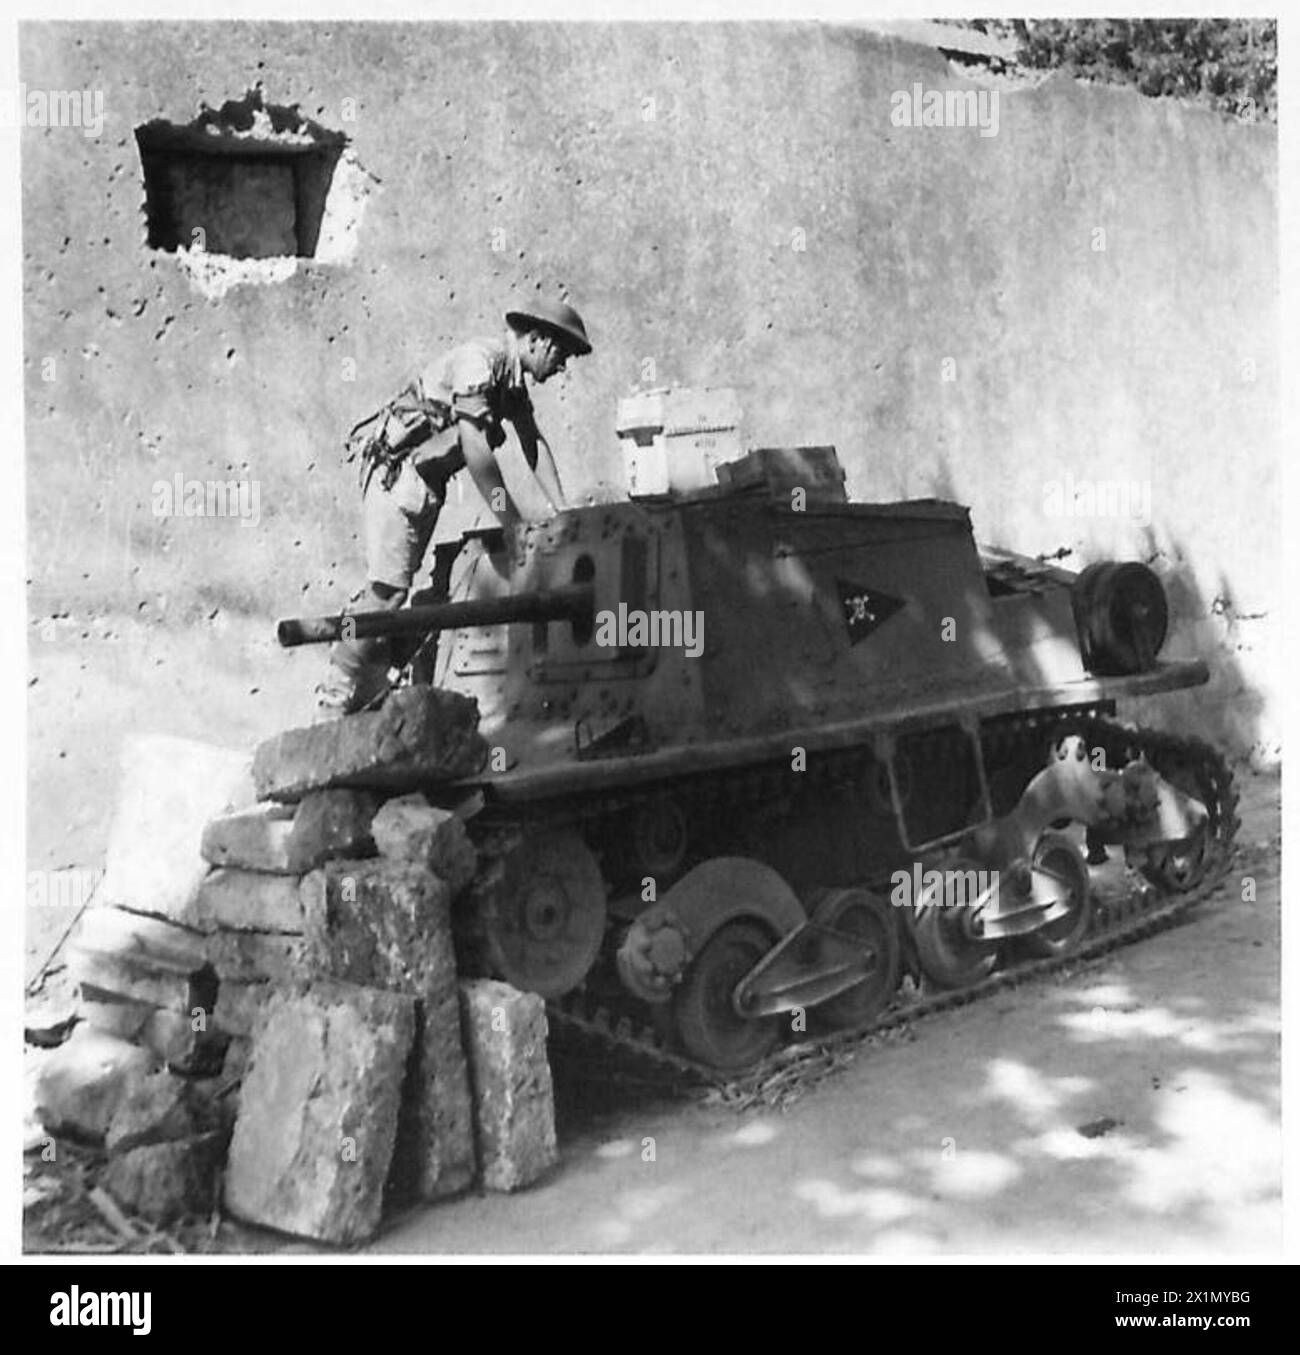 INVASION DE LA SICILE - soldat britannique inspectant un canon antichar italien (S.P.) qui a été utilisé comme point de force par l'ennemi à Noto, armée britannique Banque D'Images